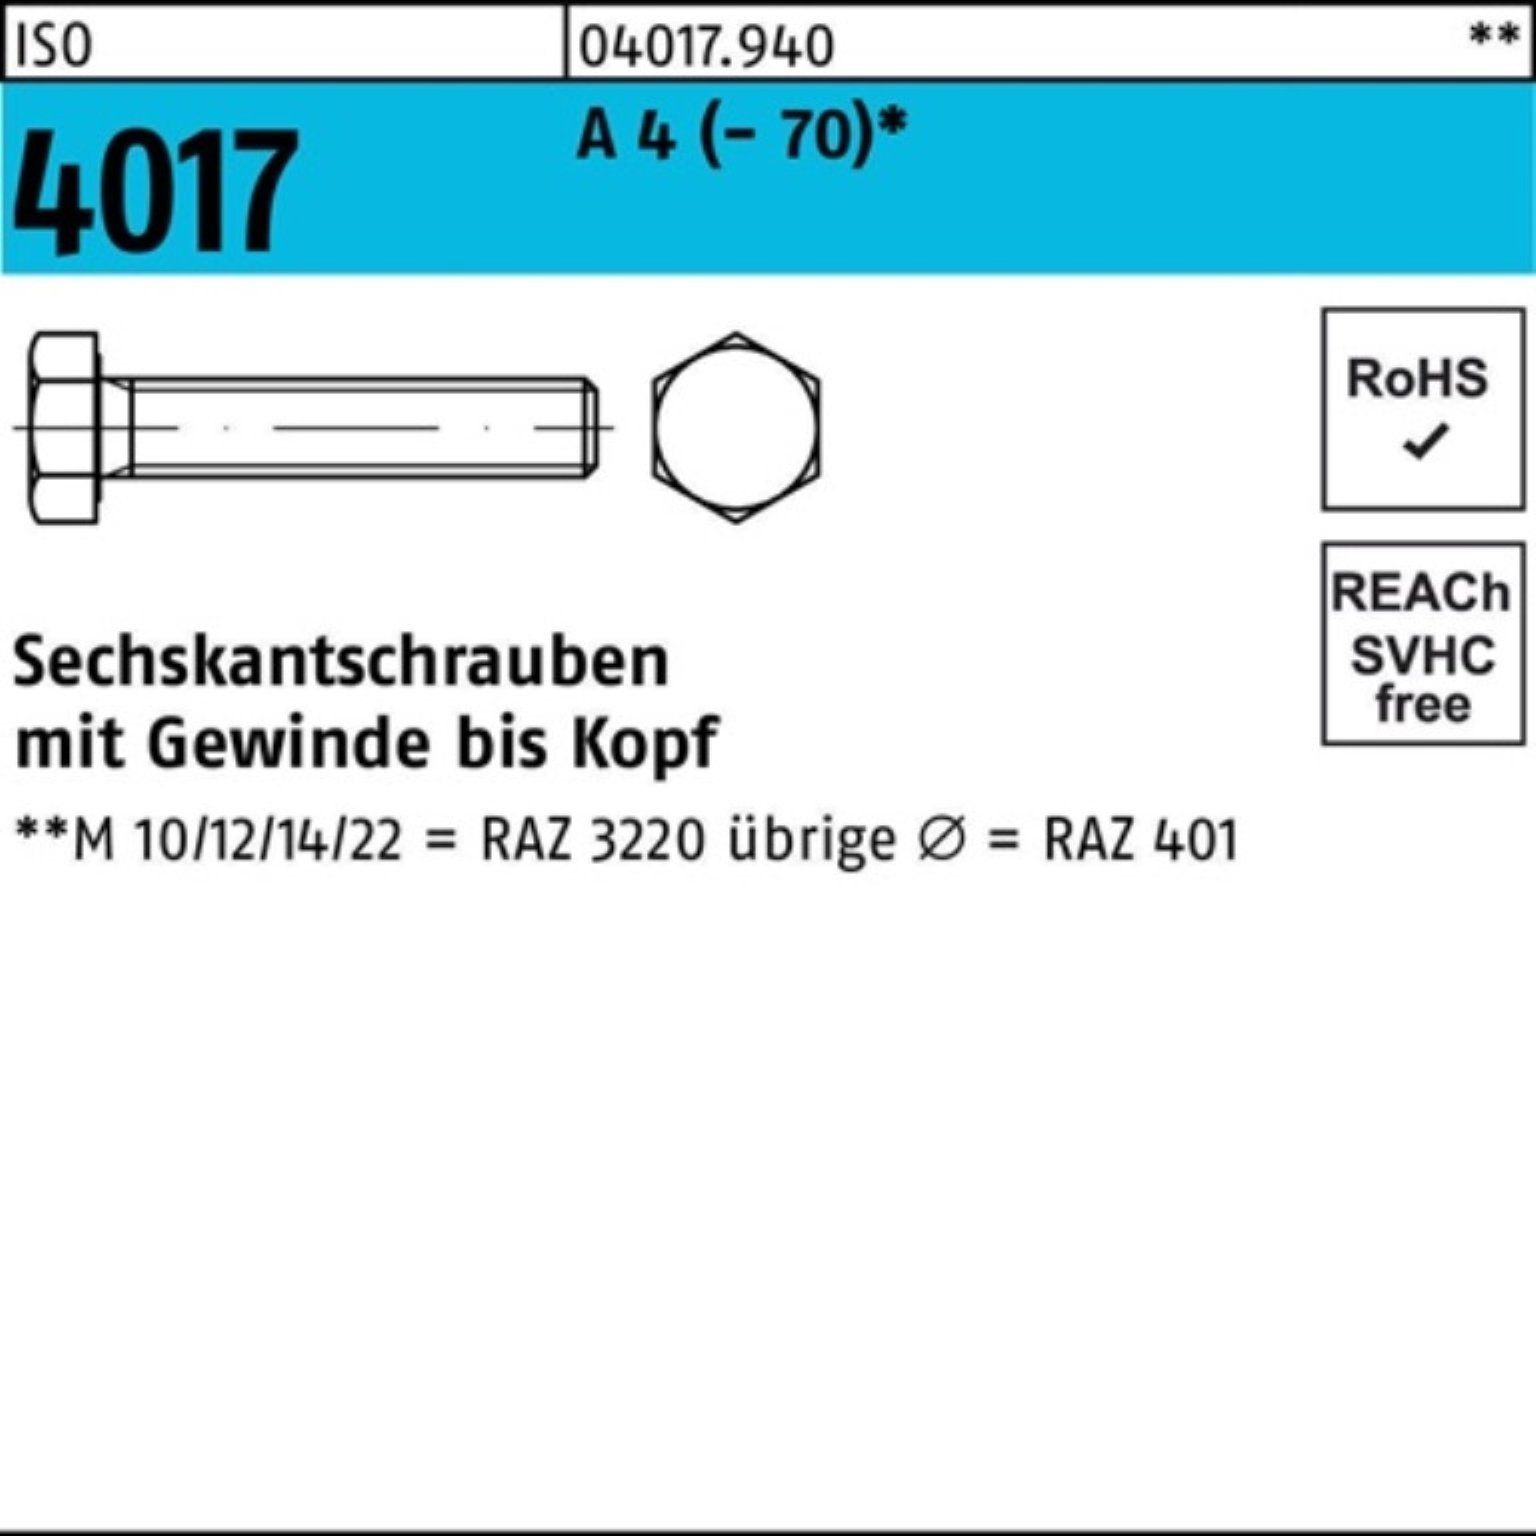 Bufab Sechskantschraube 100er Pack Sechskantschraube ISO 4017 VG M18x 90 A 4 (70) 1 Stück I